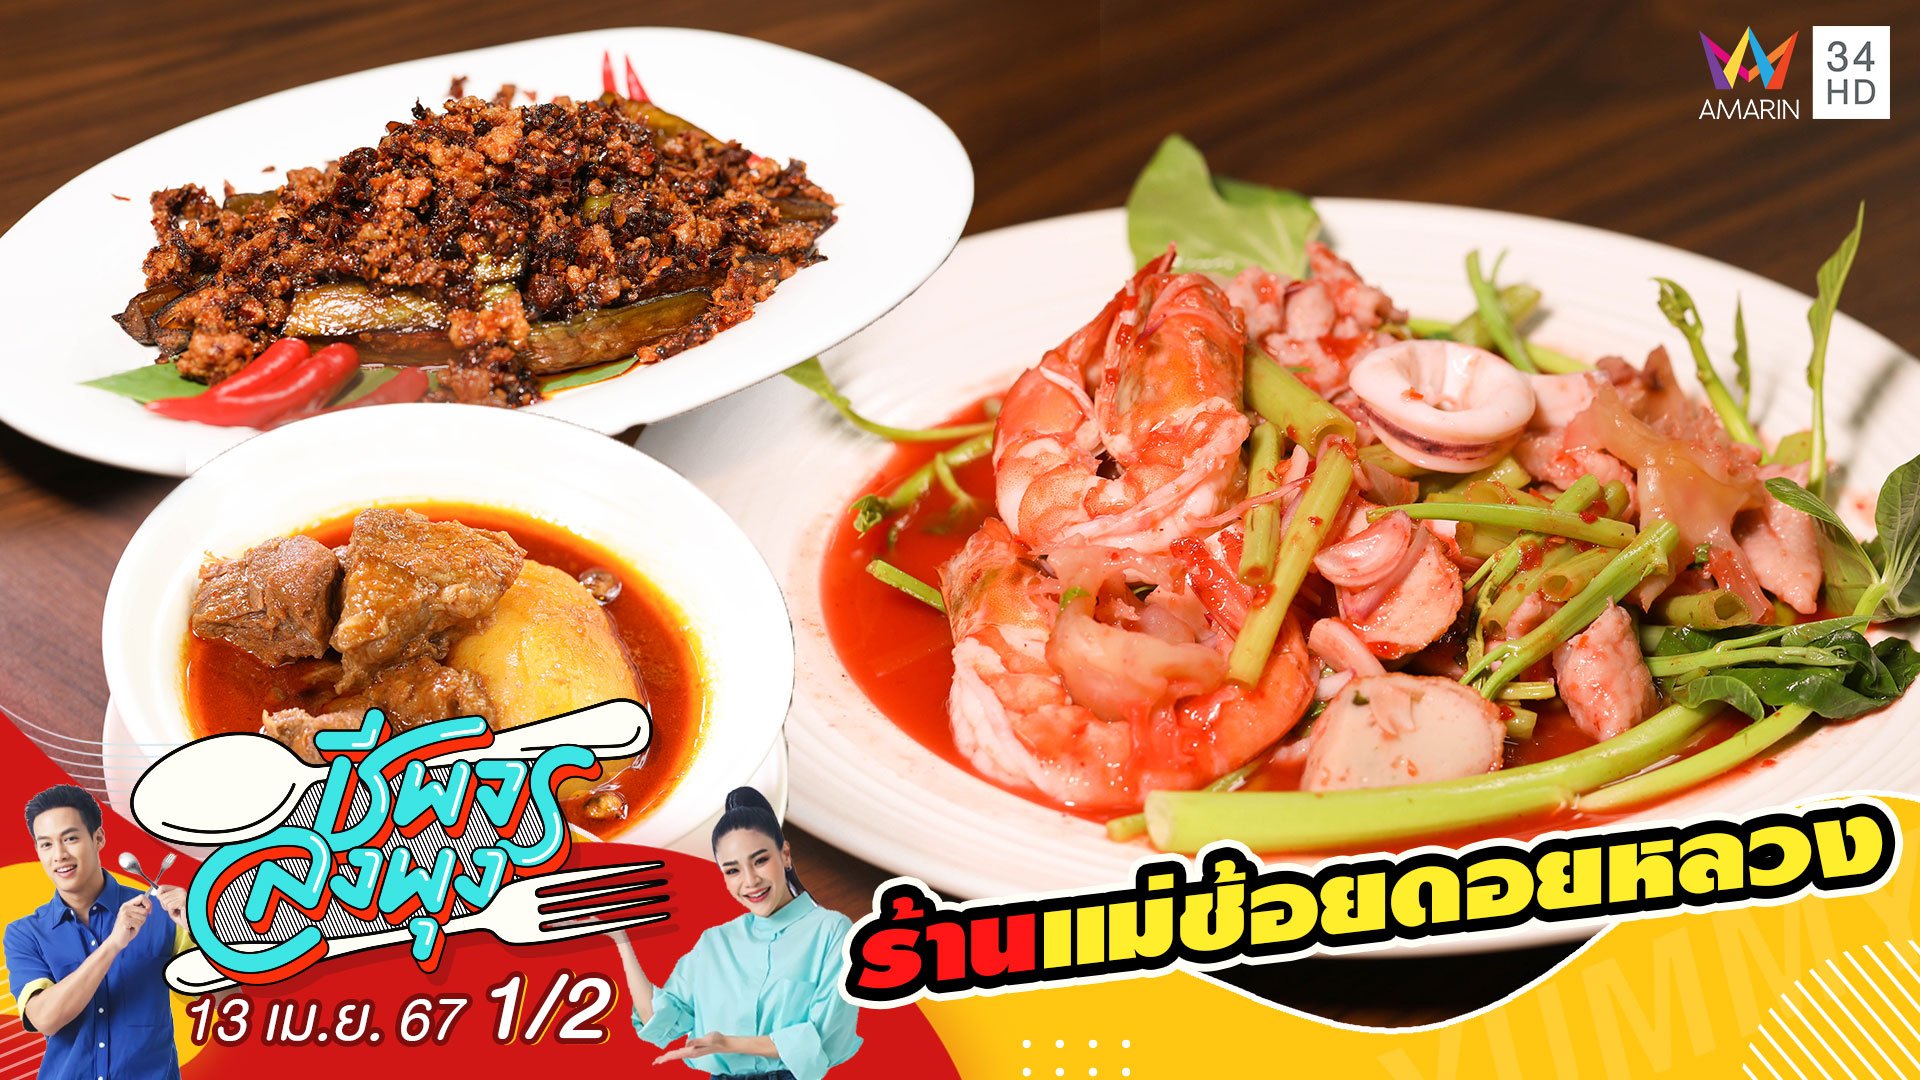 "ร้านแม่ช้อยดอยหลวง" ร้านอาหารไทยโบราณ - อาหารจีนโบราณ | ชีพจรลงพุง | 13 เม.ย. 67 (1/2) | AMARIN TVHD34